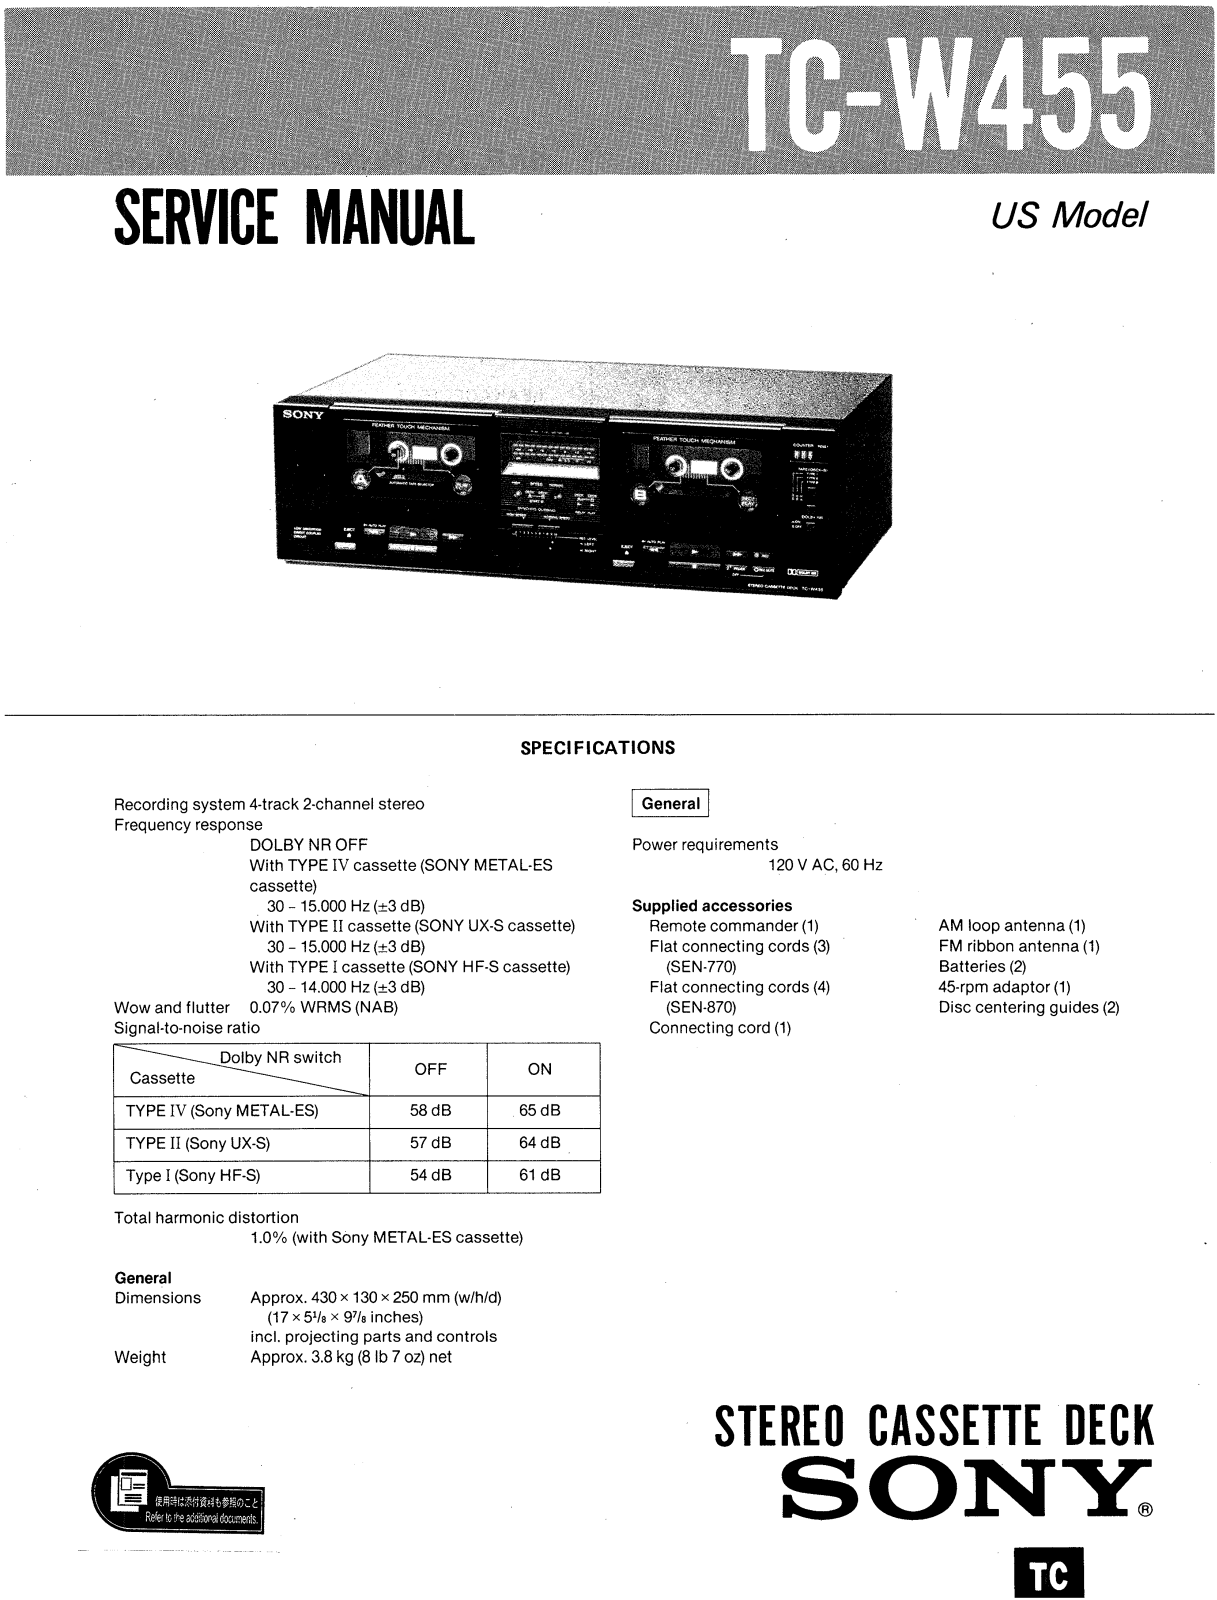 Sony TCW-455 Service manual